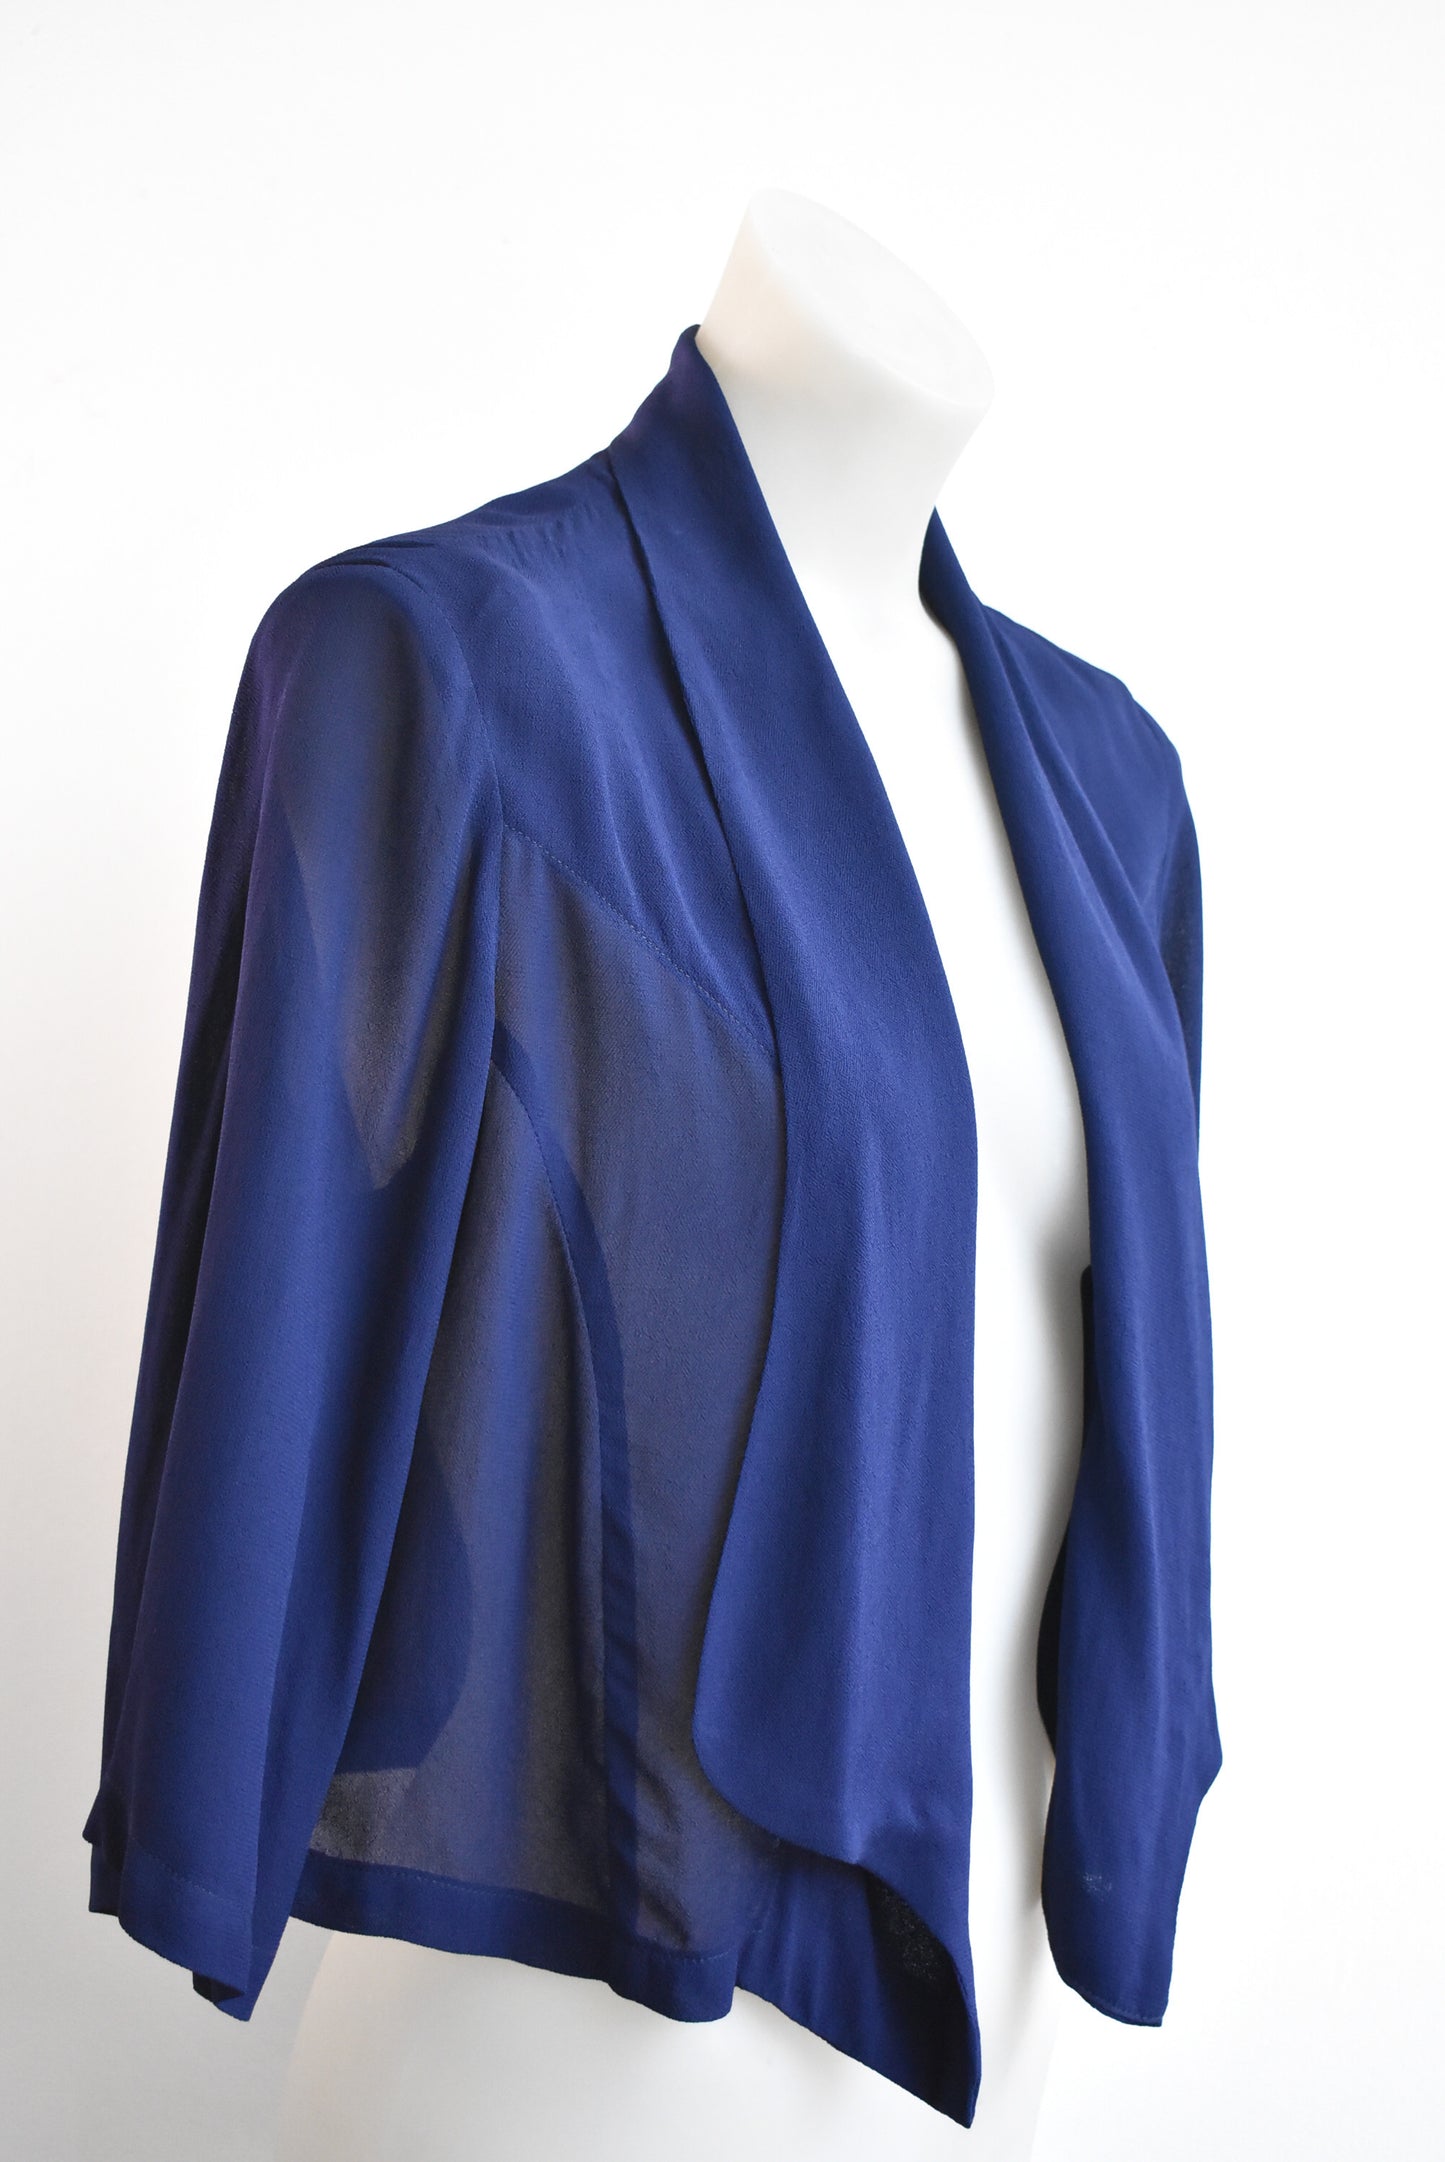 Charmaine Reveley blue jacket, size 10